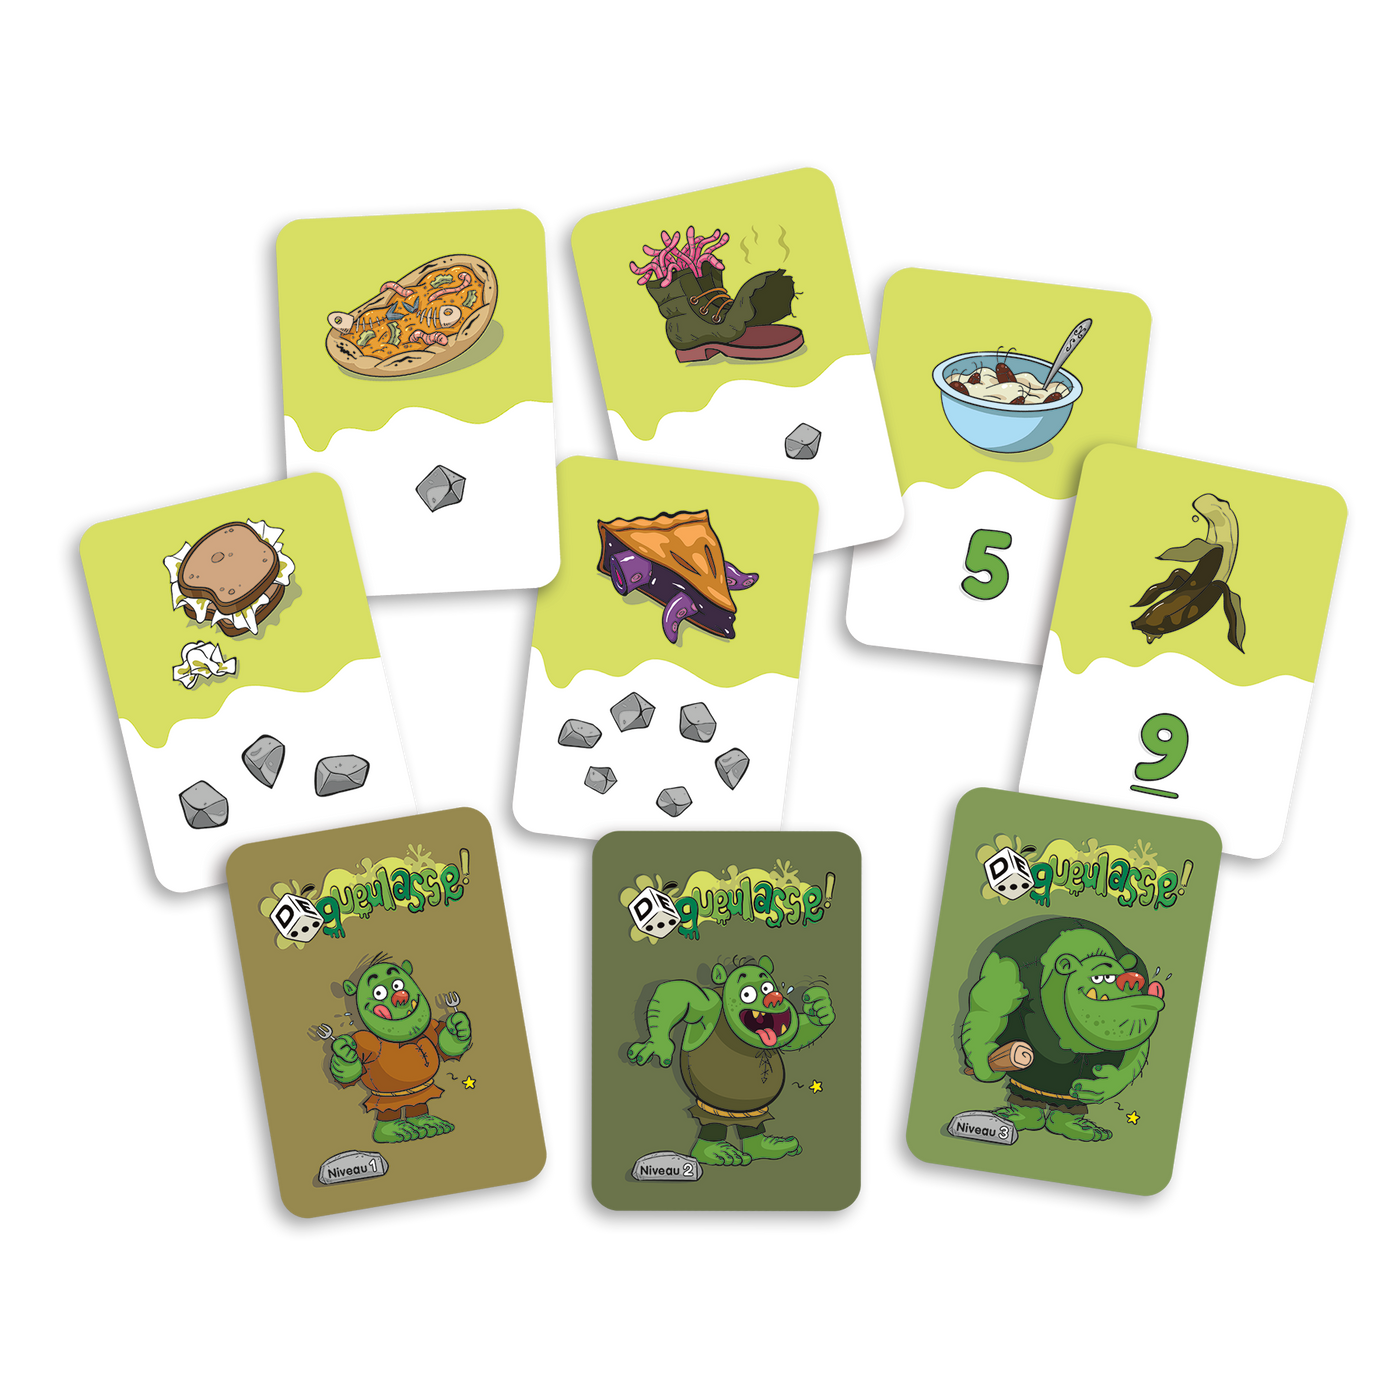 DÉgueulasse! - Exemples de cartes-ogres des 3 niveaux proposés : 1 à 6 pierres (niveau 1) et chiffres 5 et 9 (niveaux 2 et 3)